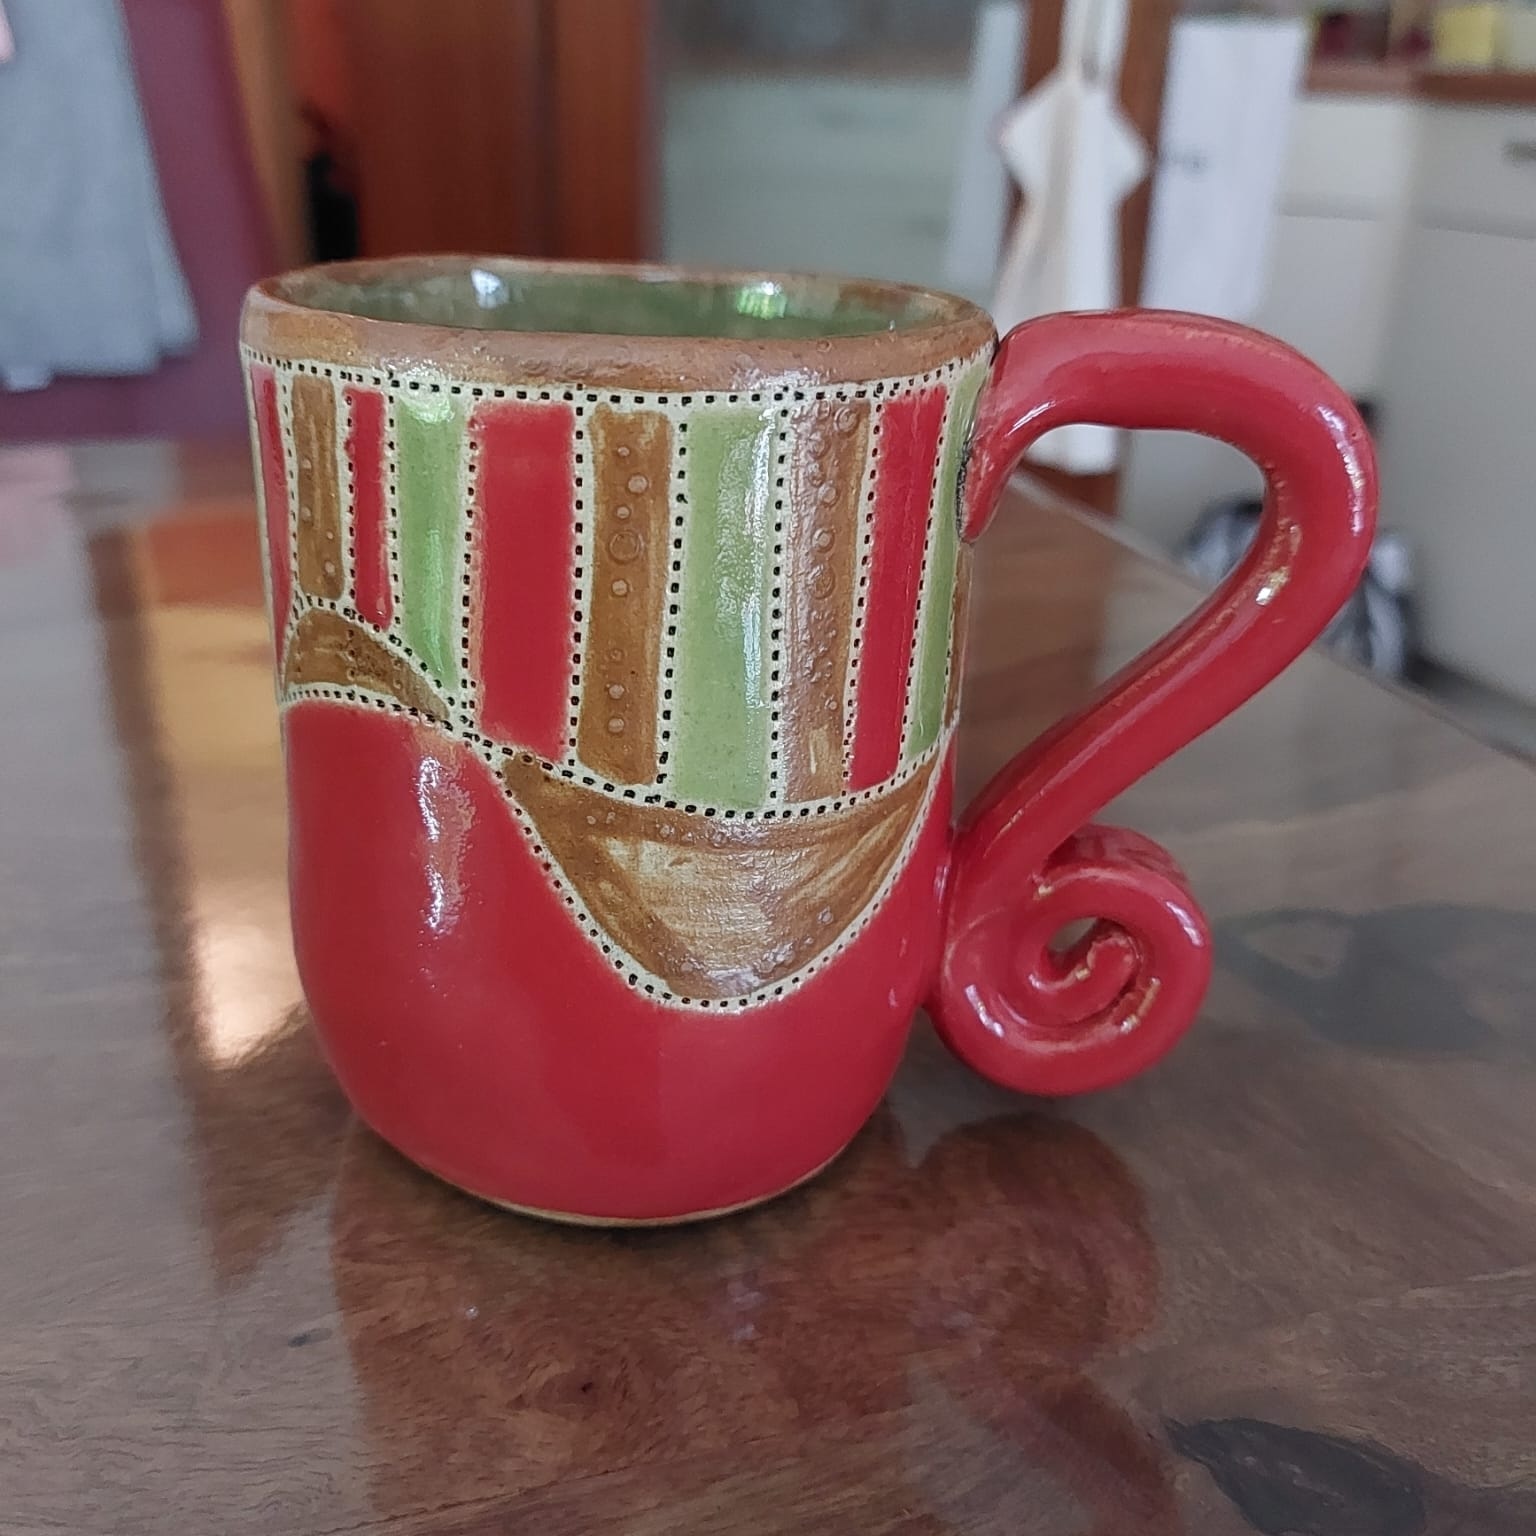 rot / grüne Keramik Tasse, handgefertigte Tasse aus Keramik, individuelle Keramik, Clay Art, schöne Tasse als Einzelstück, KeraMik von Herz zu Herz